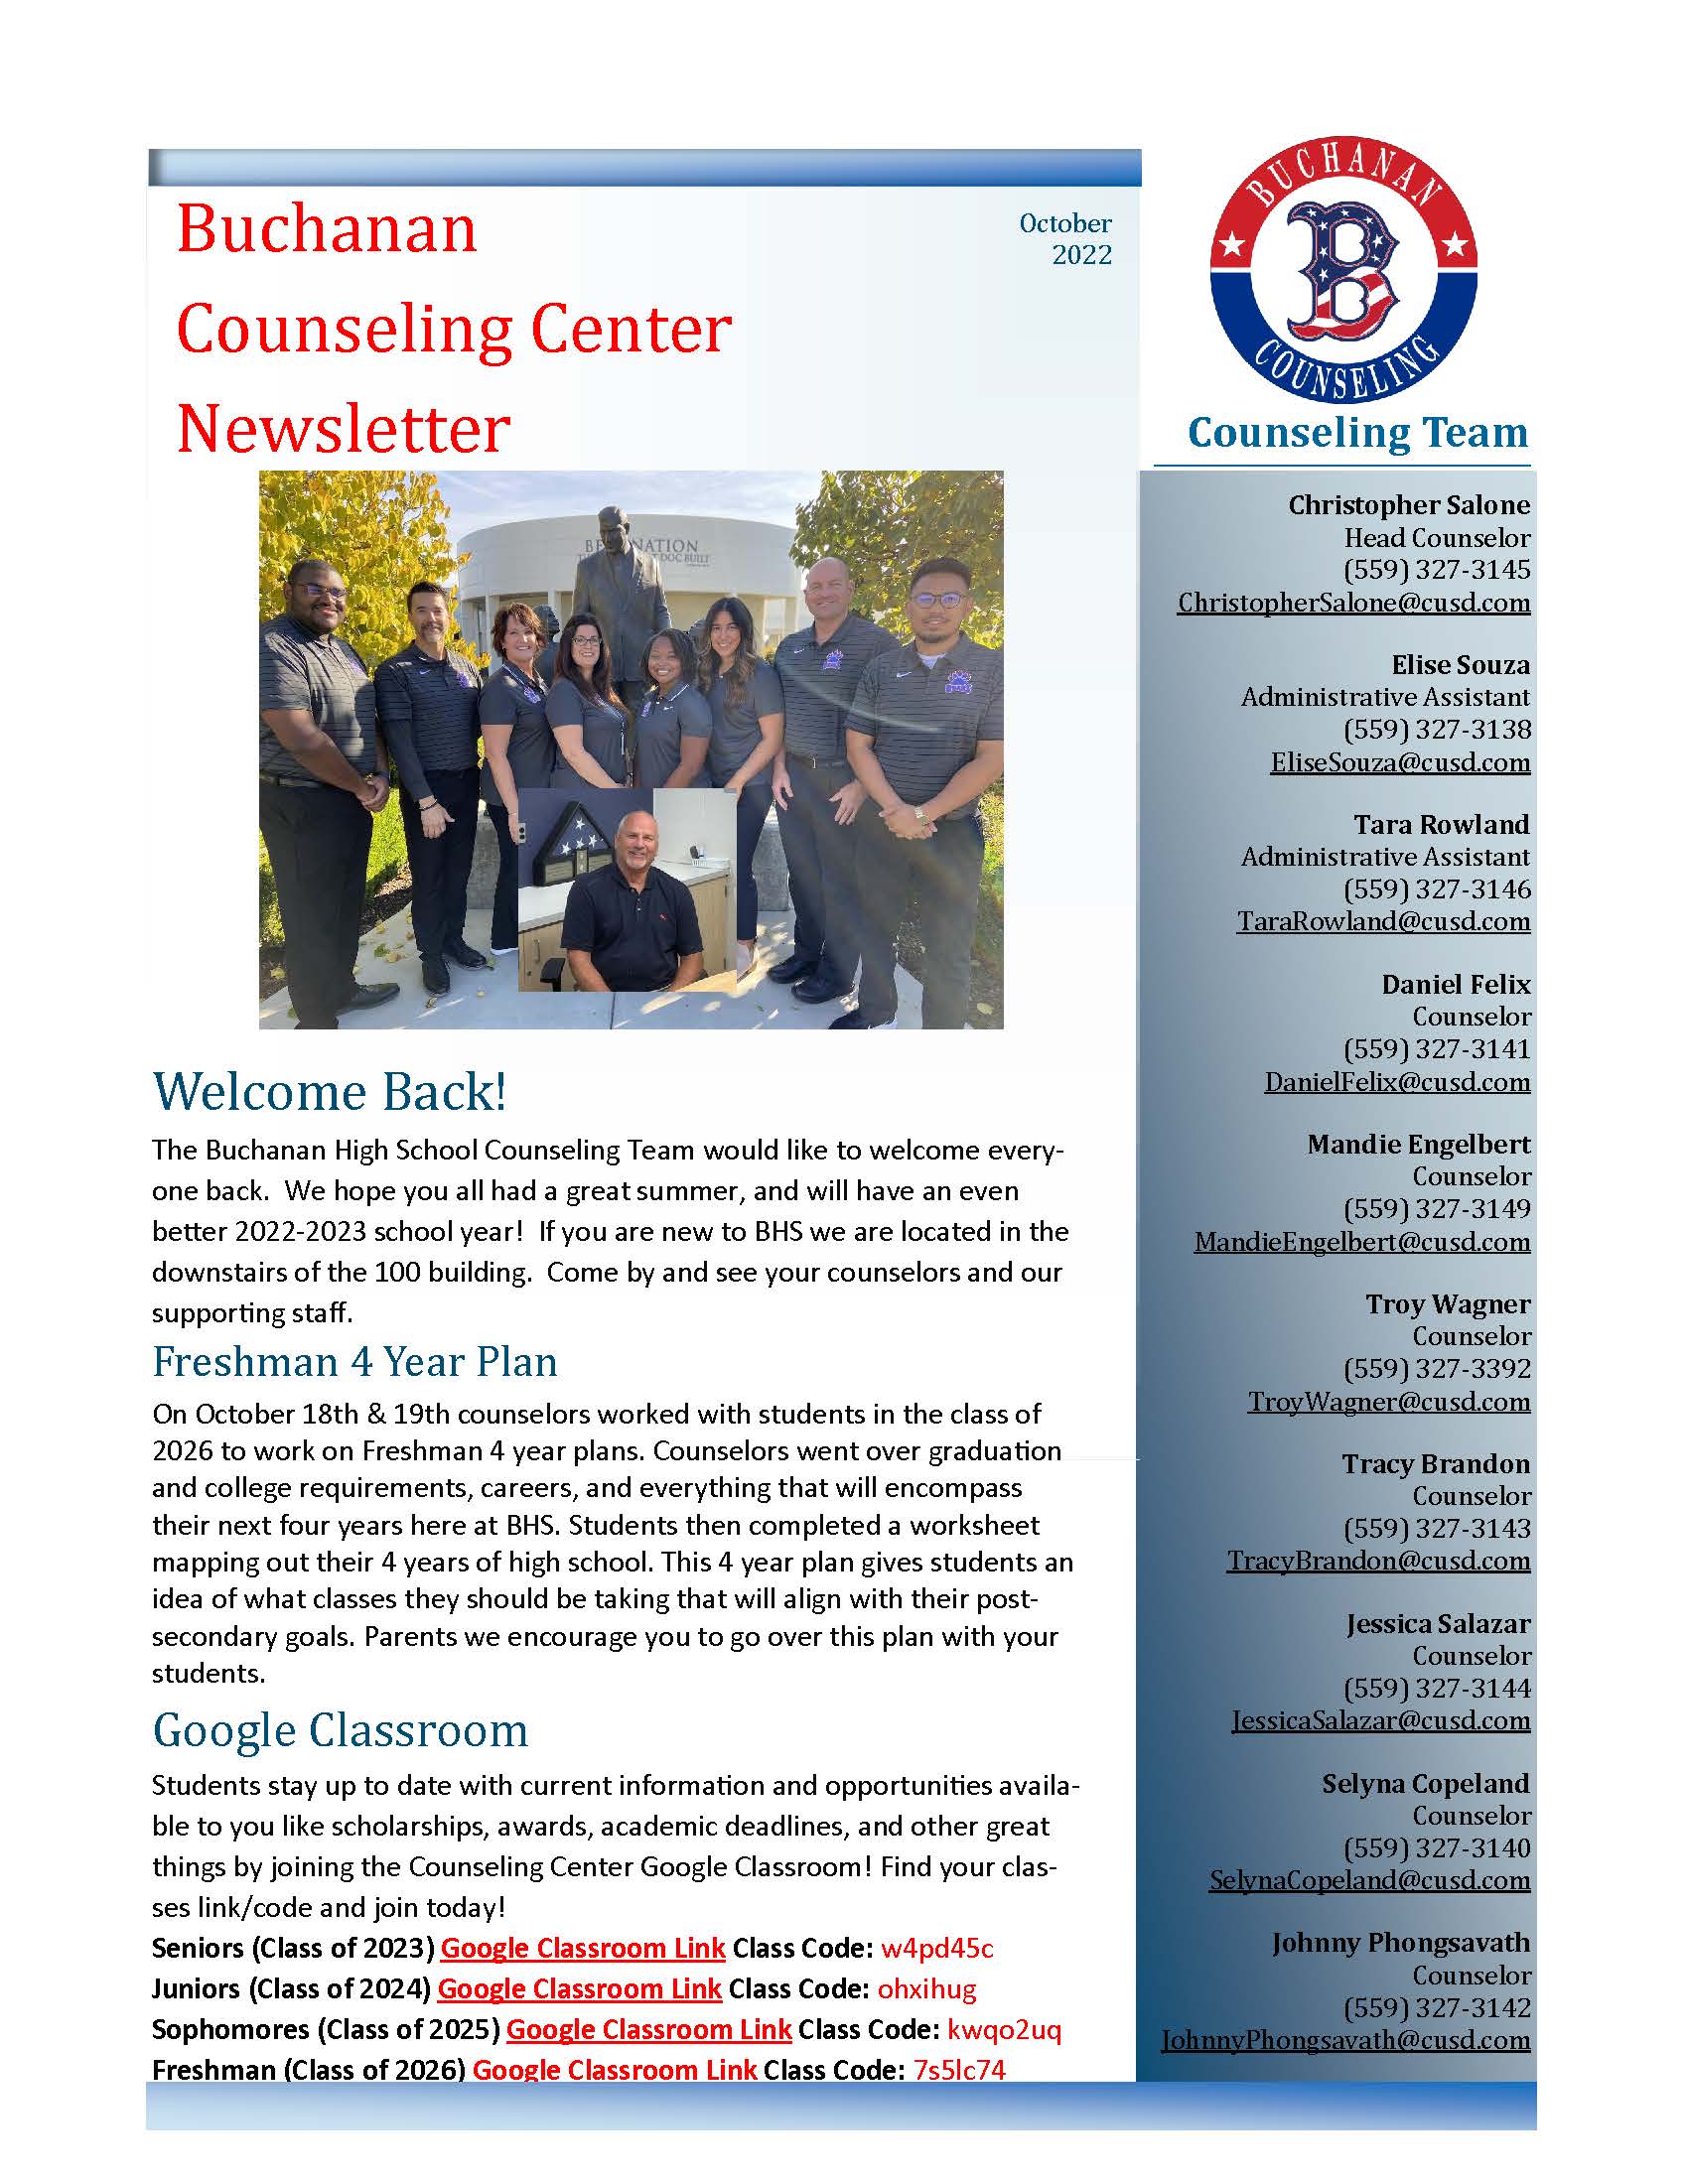 Counseling Center October 2022 Newsletter